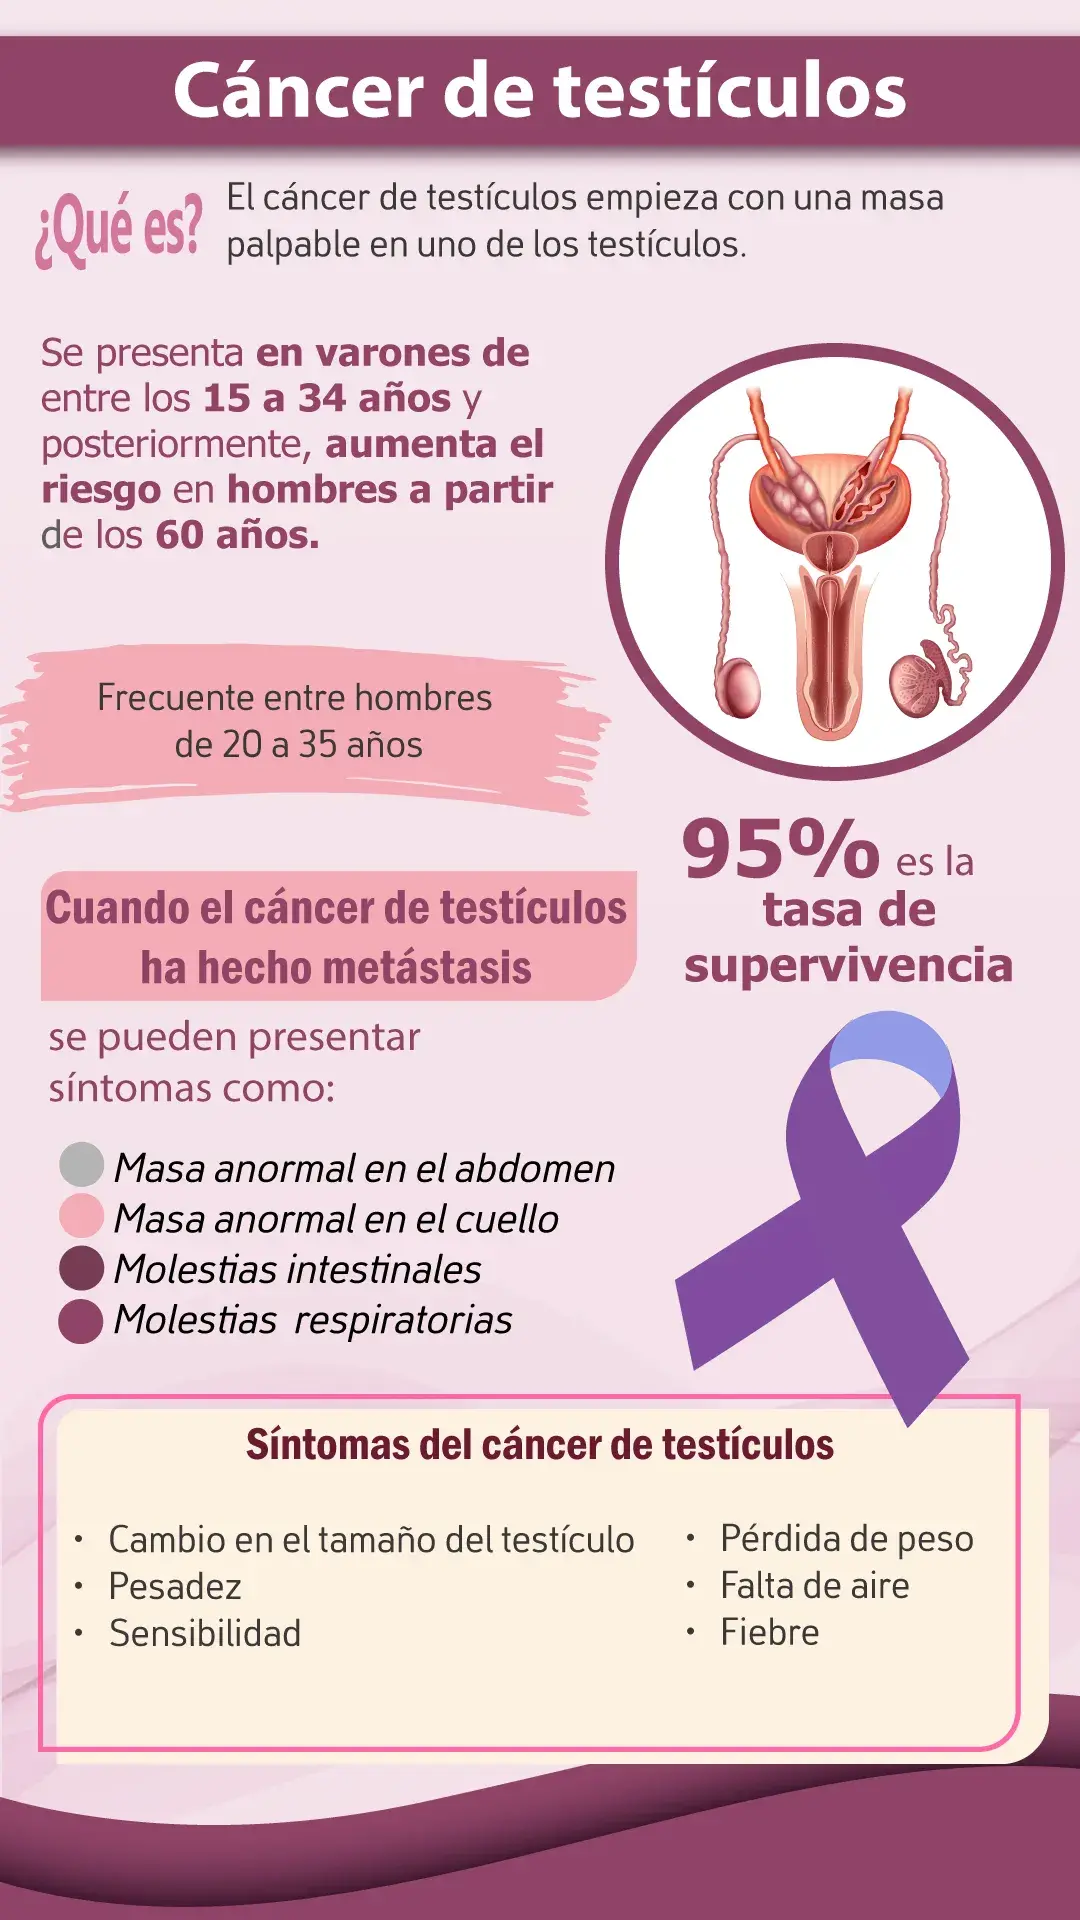 Qué es el cáncer de testículos (Síntomas, tasa de supervivencia, intervalo de edad)